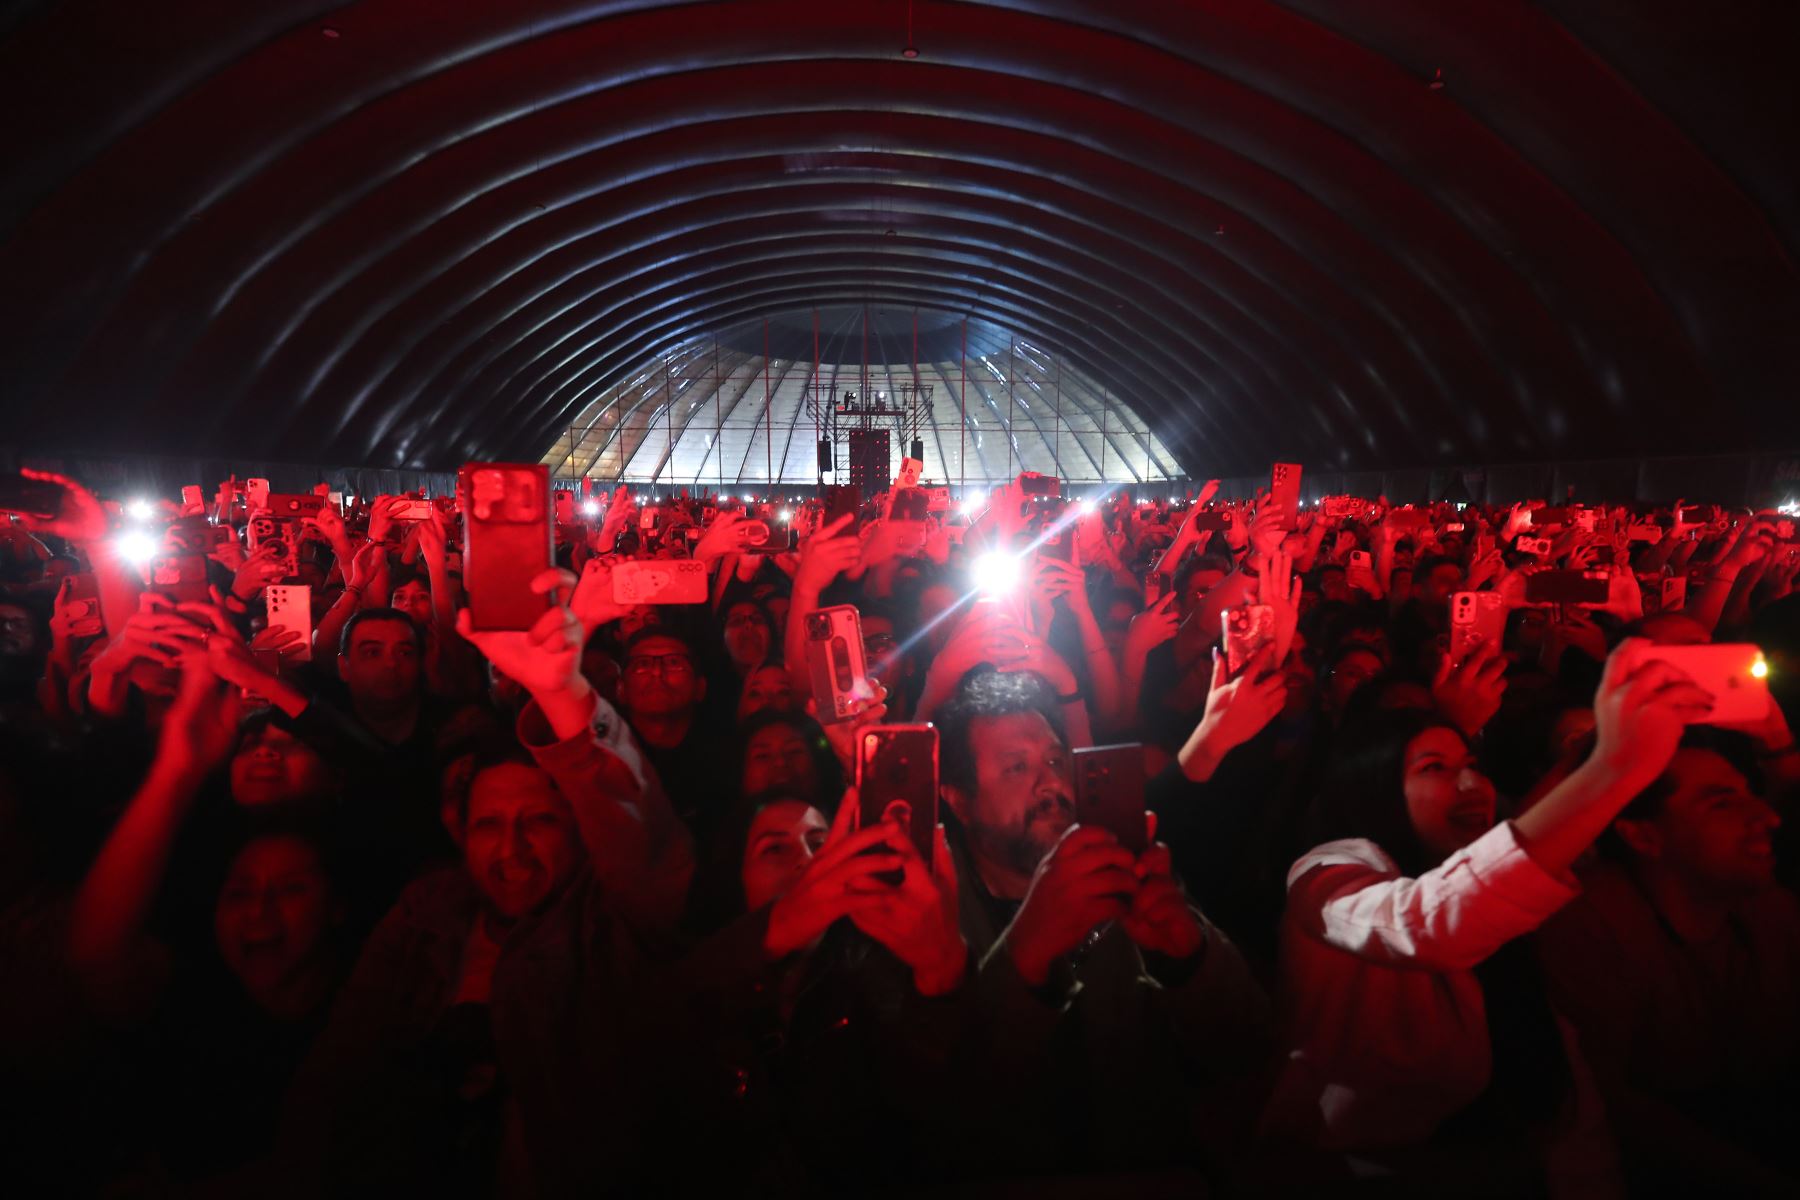 Fito Páez deslumbra en gran concierto  Limeño. El cantante argentino presenta  esperado show en Lima  como parte de su gira “El amor 30 años después del amor”.
Foto: ANDINA/Ricardo Cuba